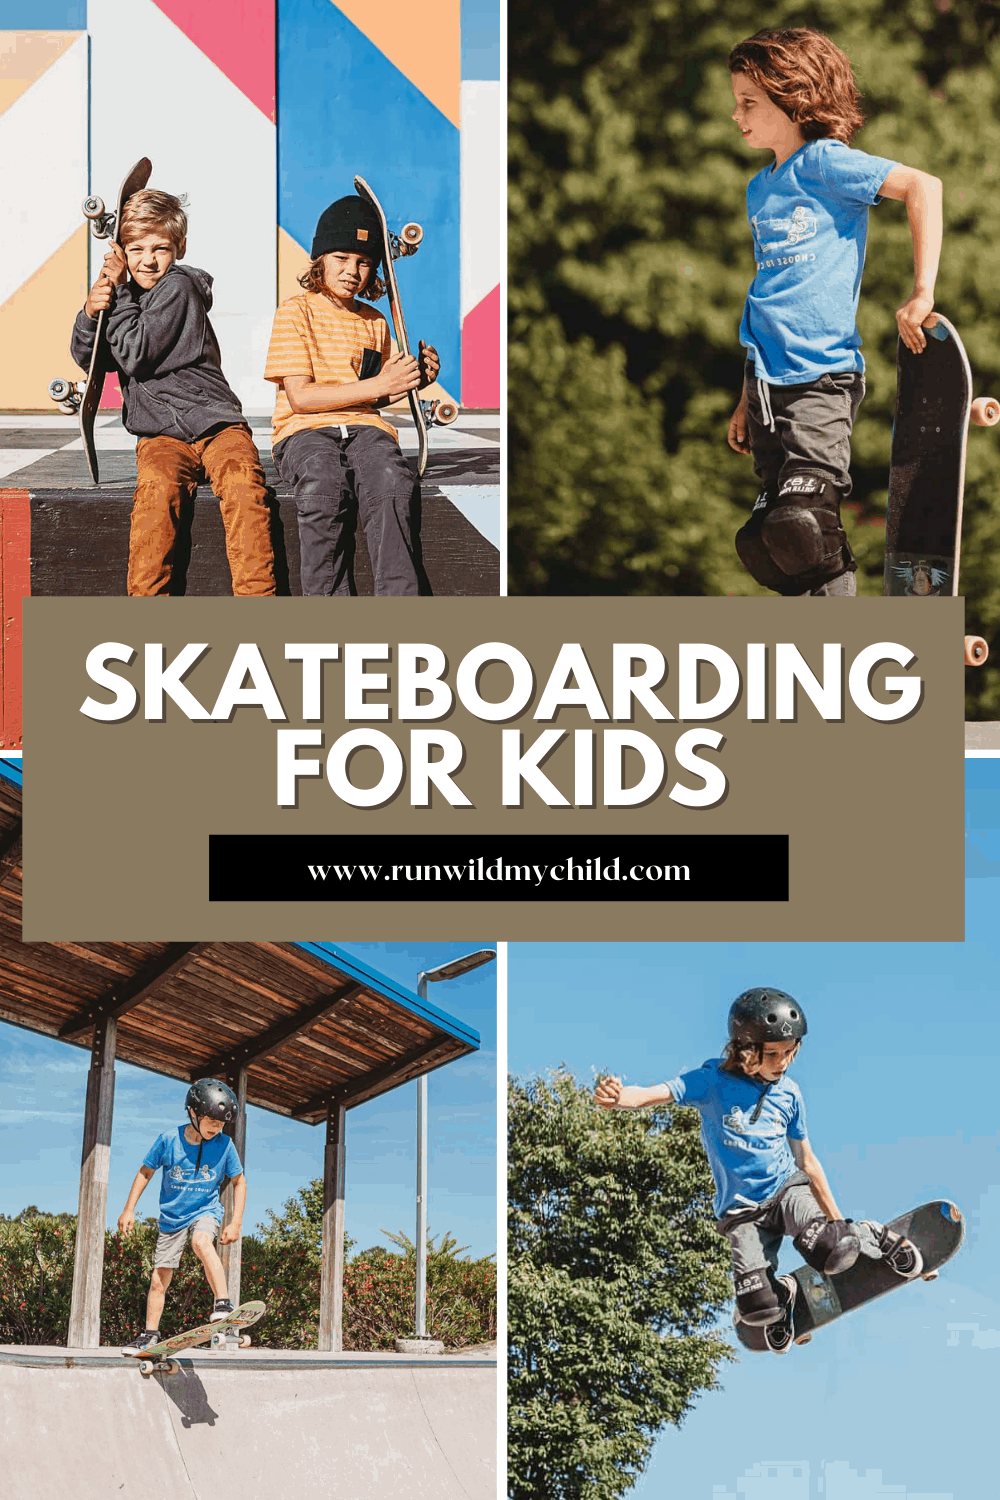 skateboarding 101 - teaching kids how to skateboard